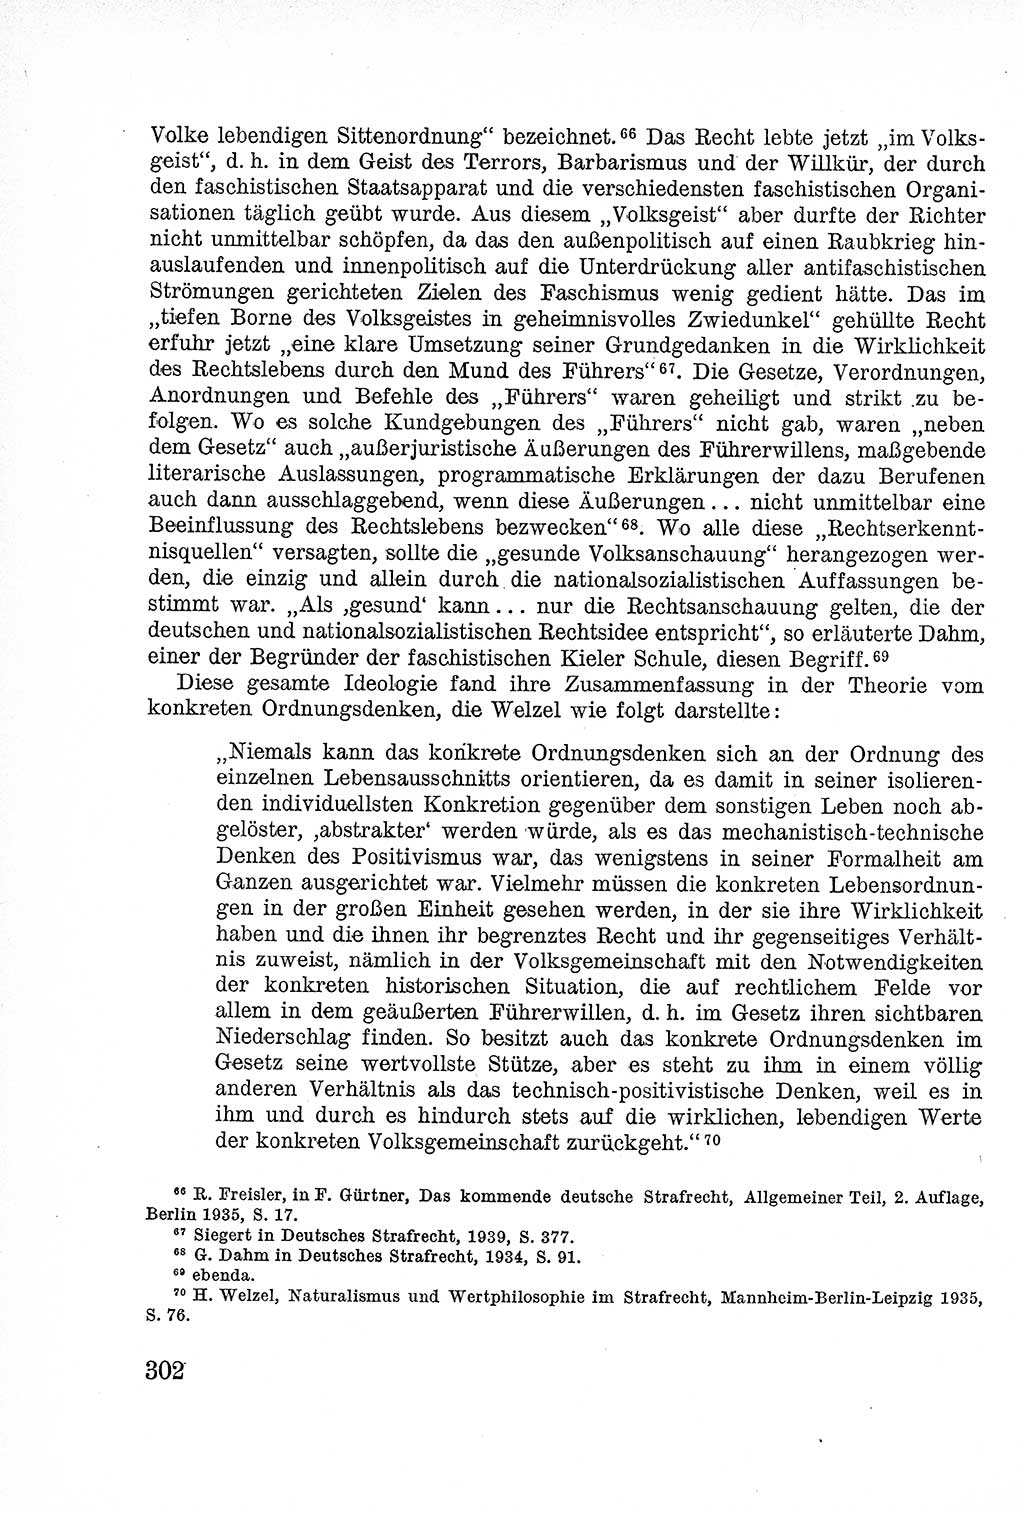 Lehrbuch des Strafrechts der Deutschen Demokratischen Republik (DDR), Allgemeiner Teil 1957, Seite 302 (Lb. Strafr. DDR AT 1957, S. 302)